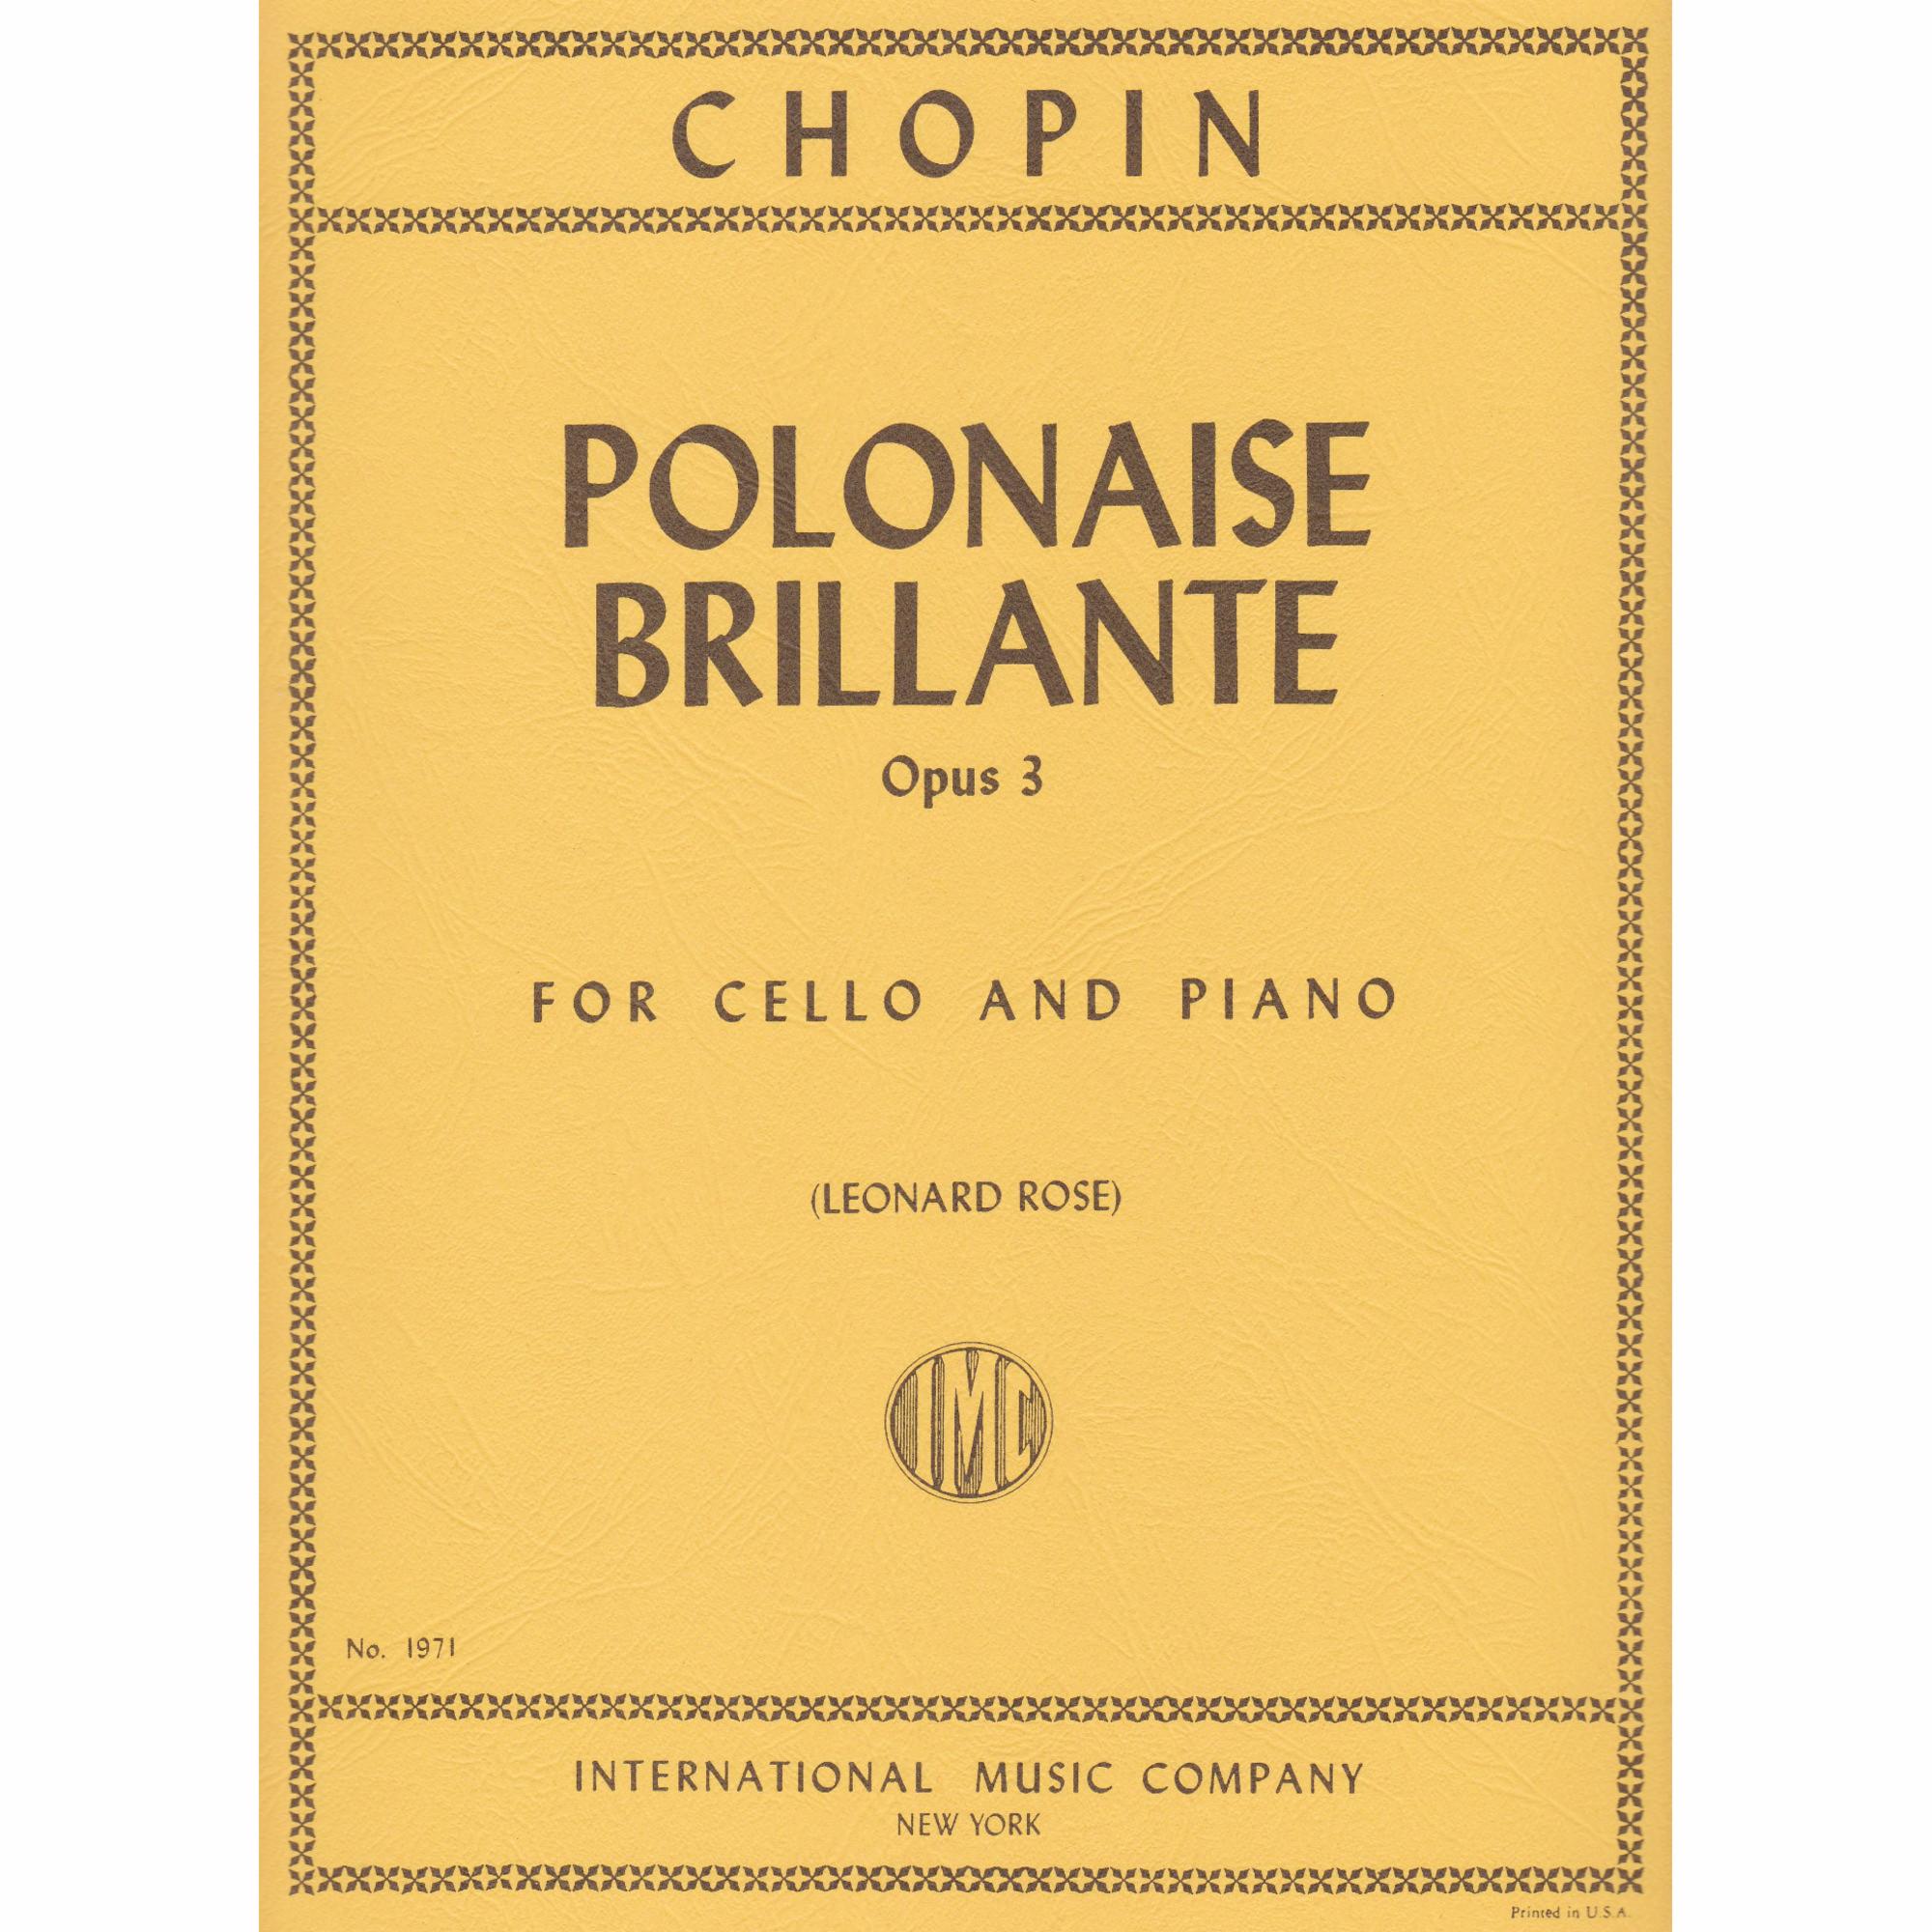 Polonaise Brillante for Cello and Piano, Op. 3